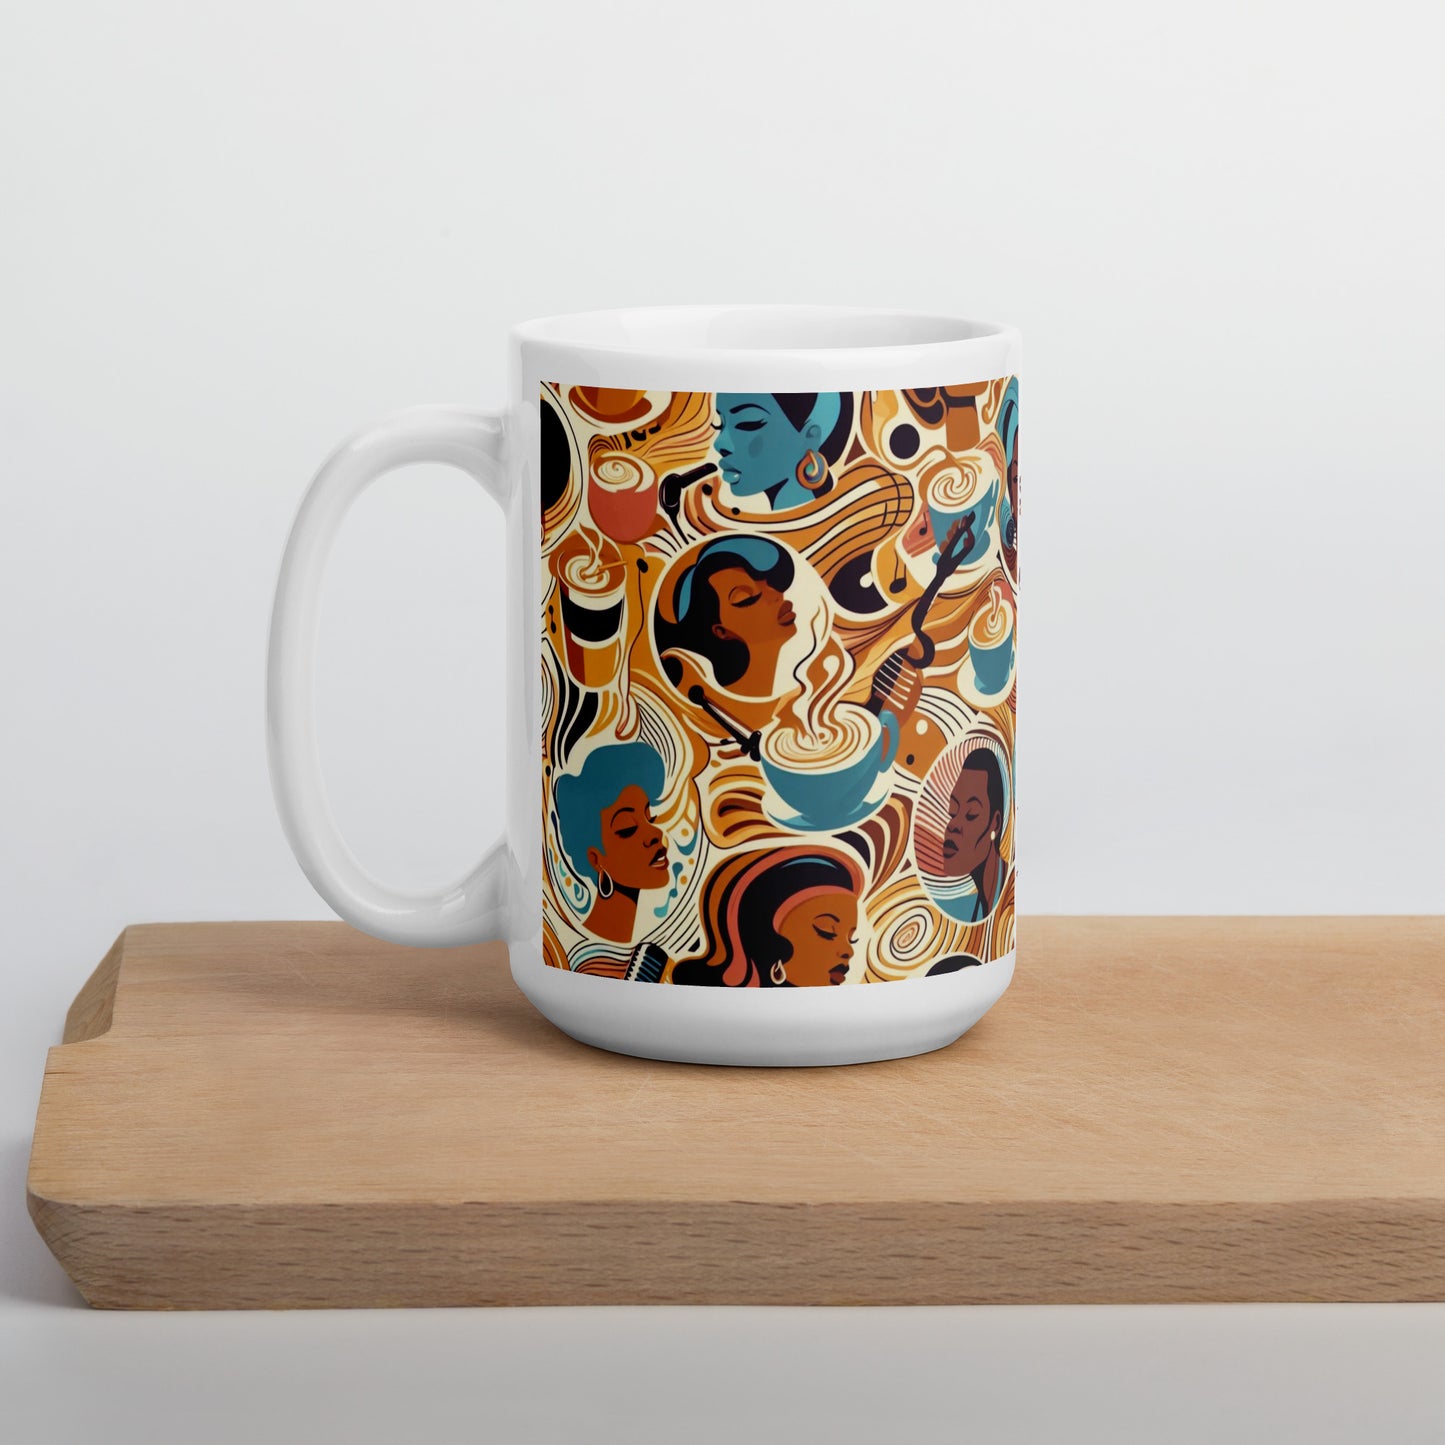 15oz coffee mug